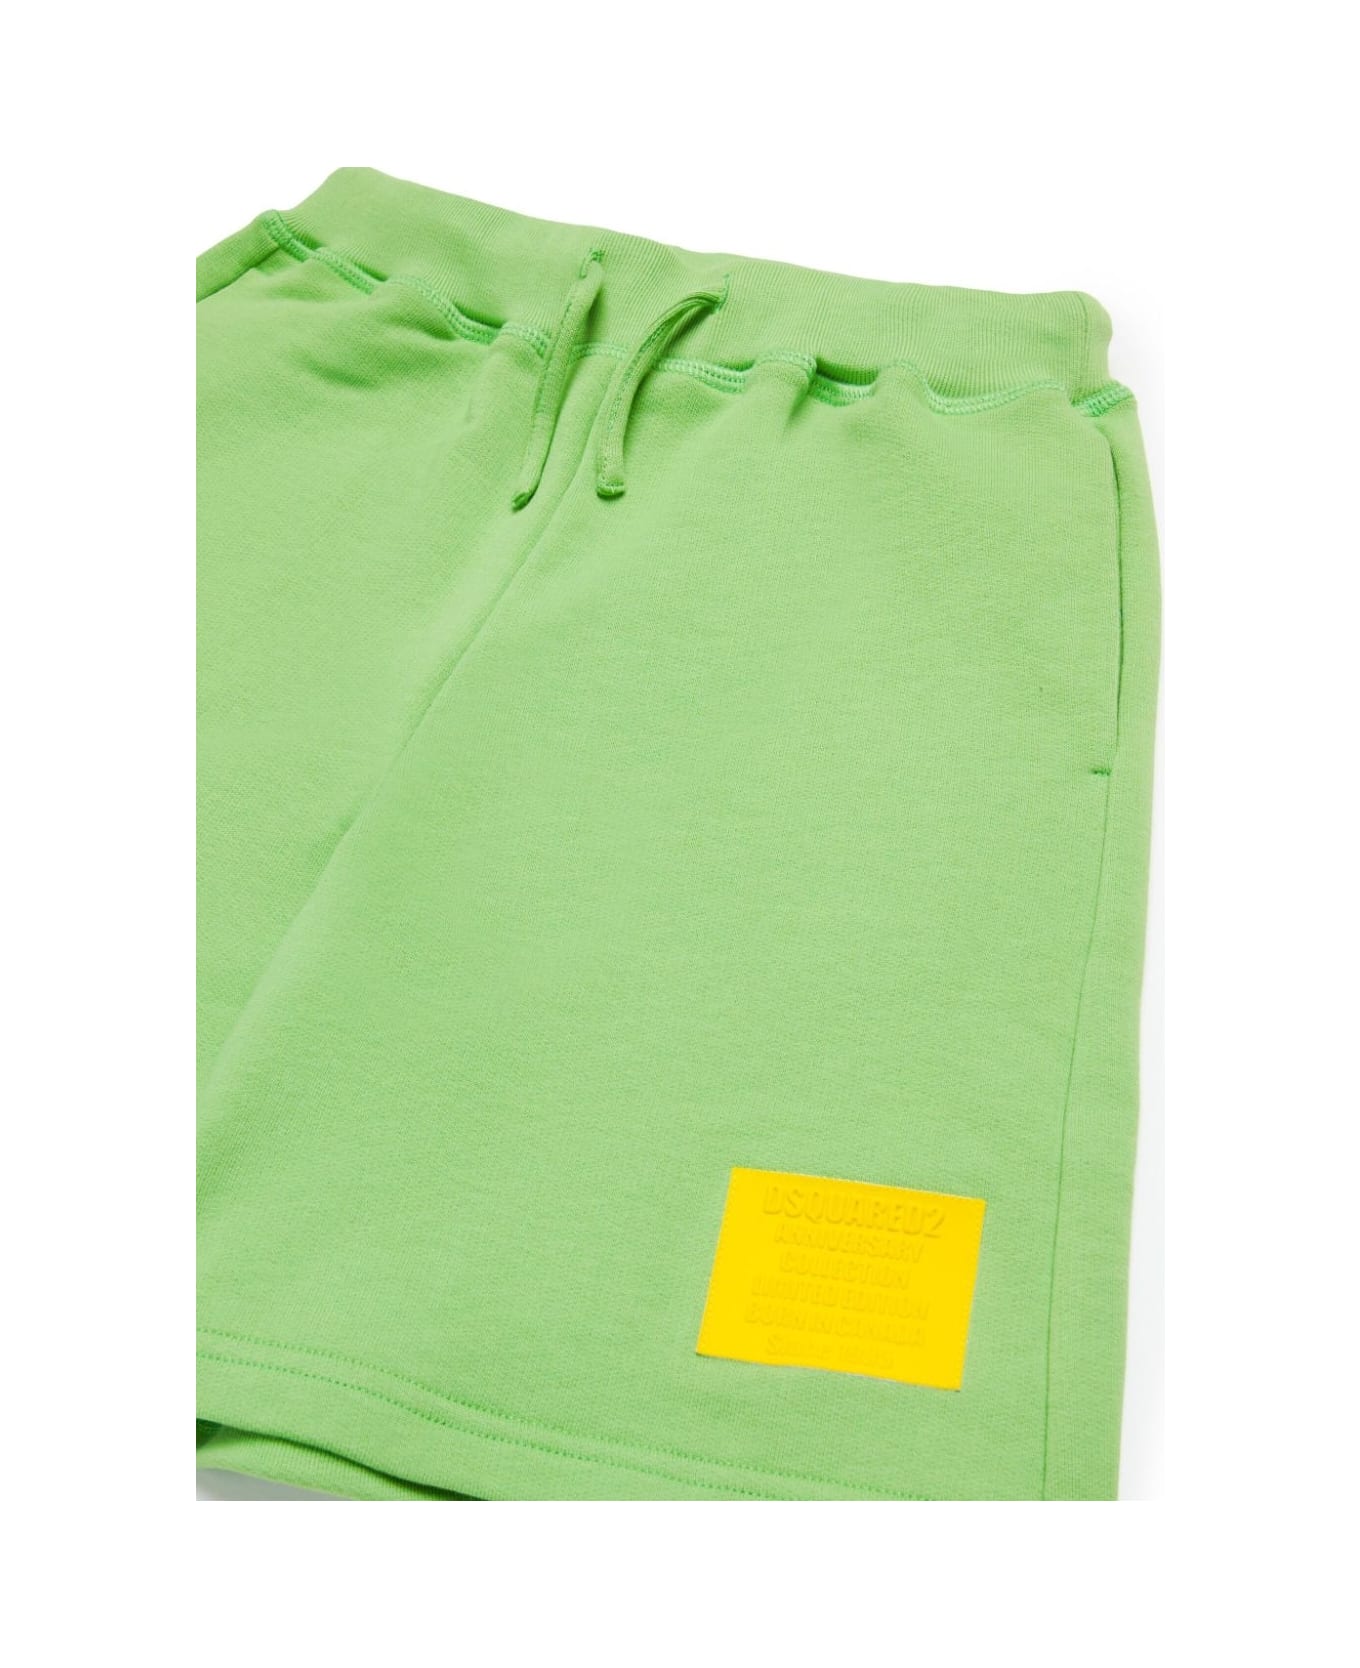 Dsquared2 Shorts Con Applicazione - Green